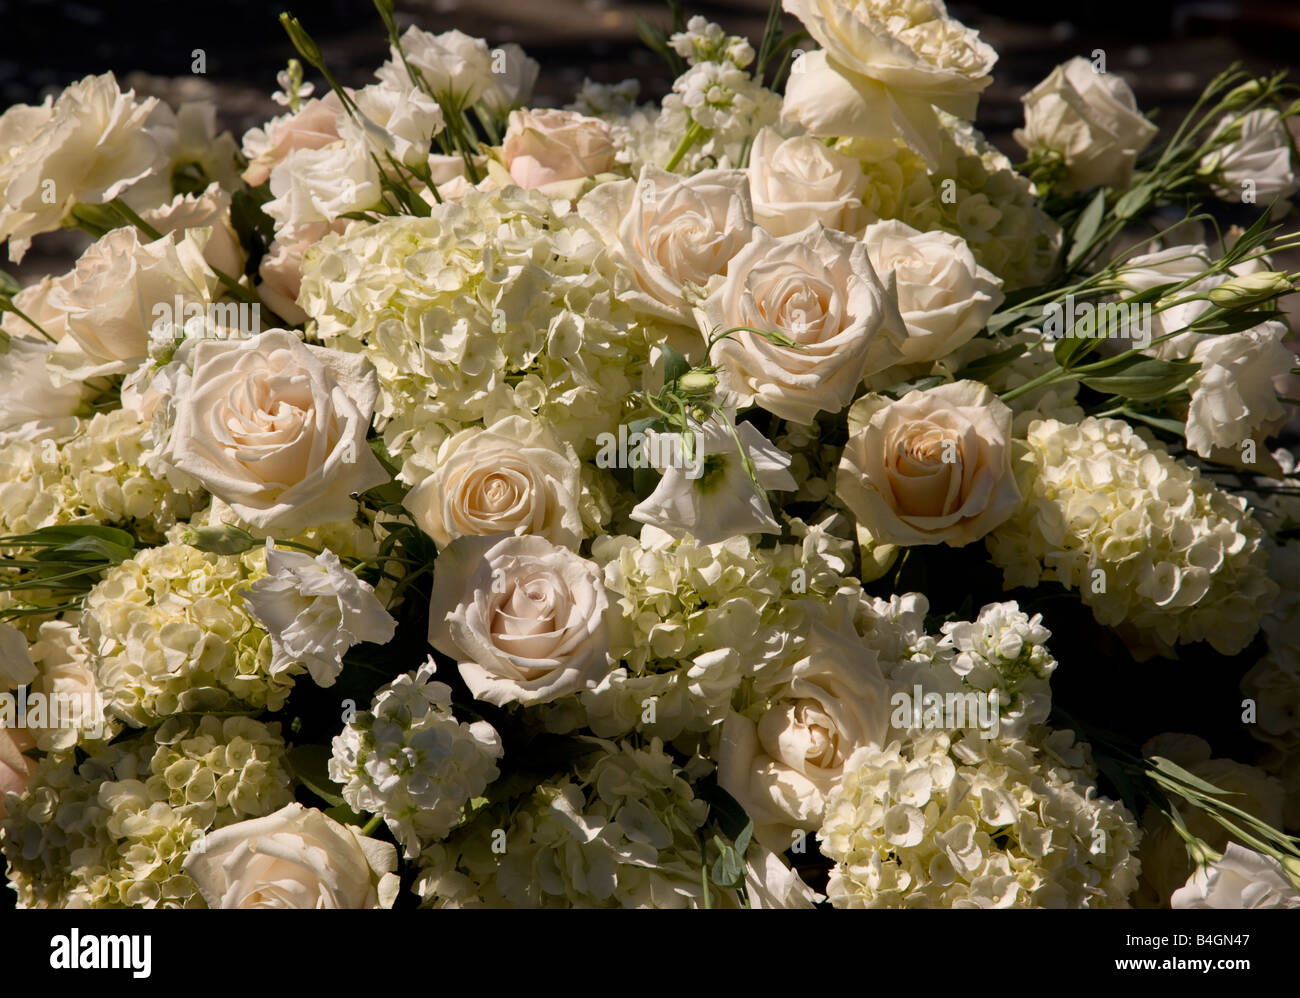 Leichte rosa Rosen und weißen Hortensien ruhen in Marmor nach bestem Brookgreen Gardens in Murrells Inlet, South Carolina, USA. Stockfoto